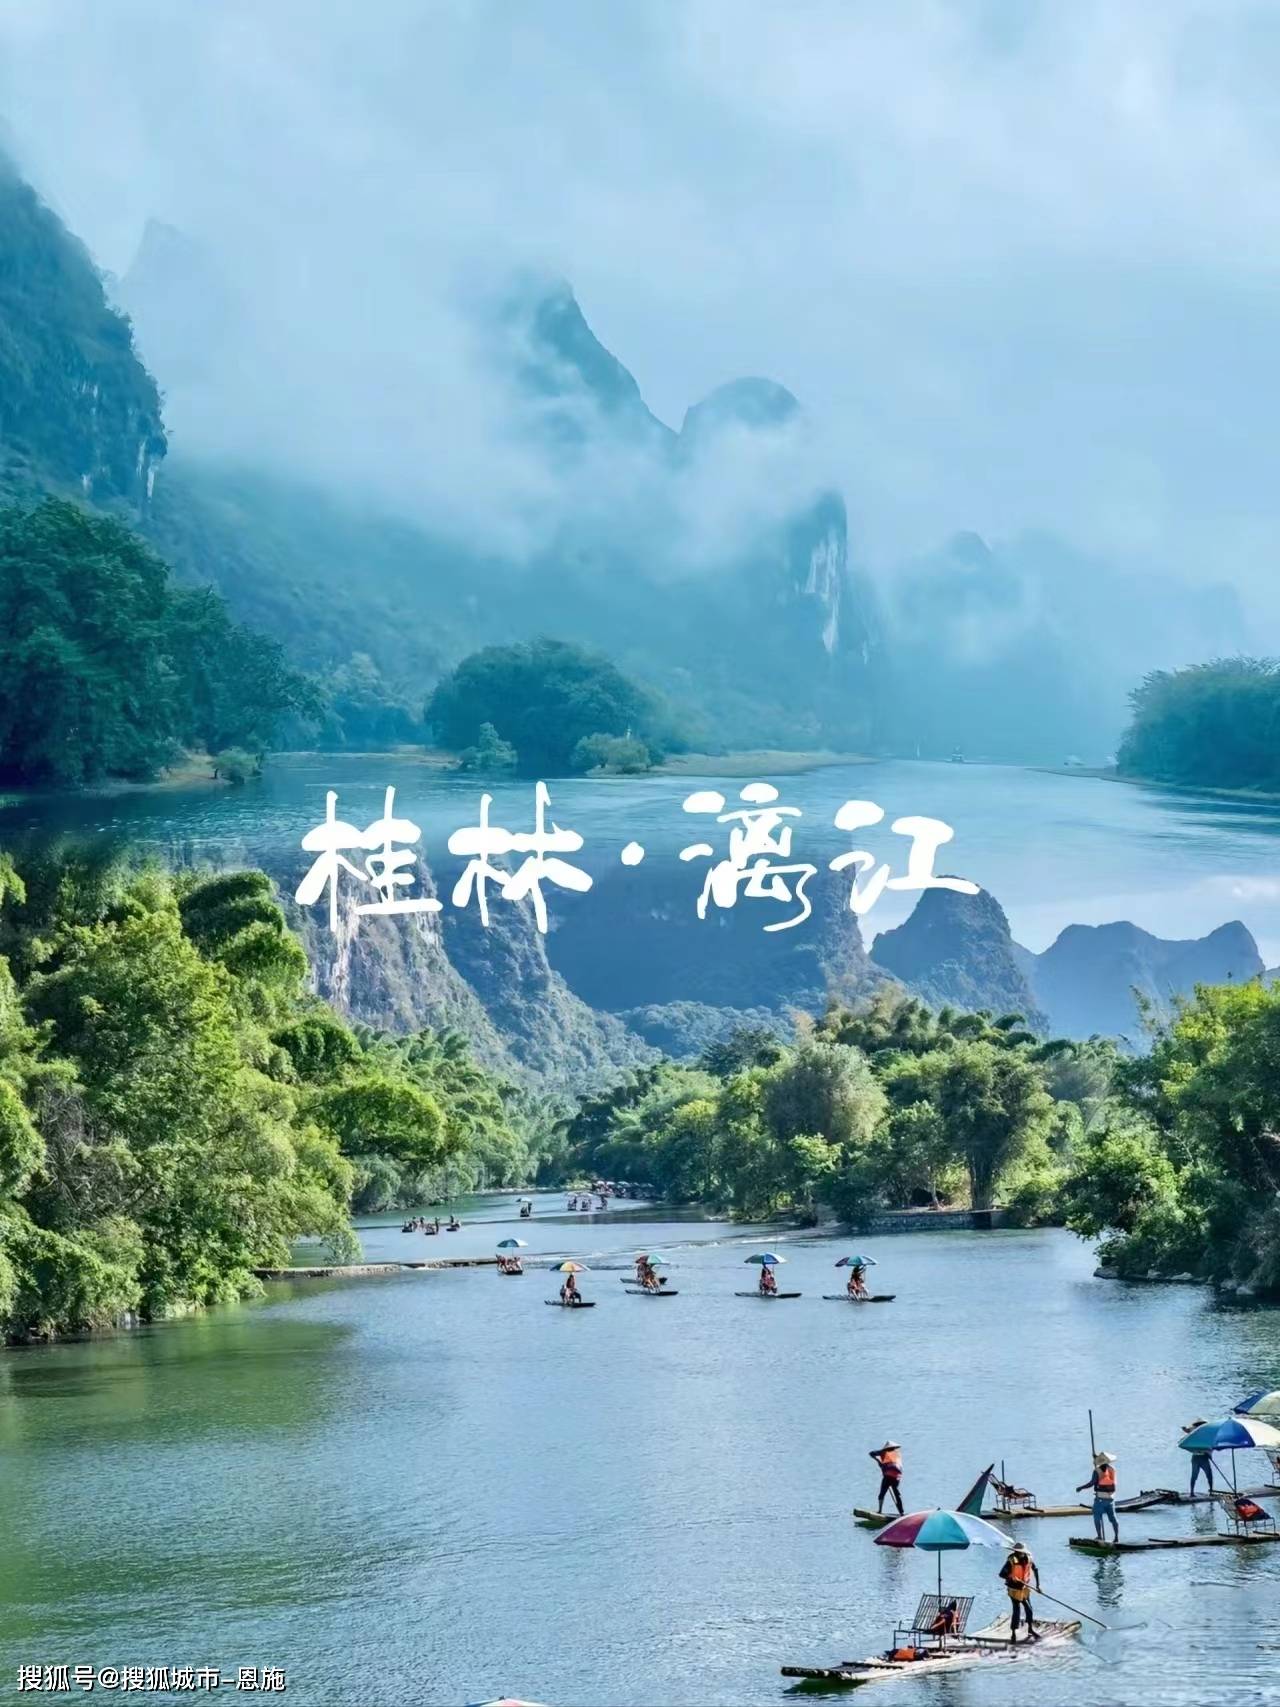 漓江是桂林一处风景非常漂亮的风景名胜区,漓江江水的水质非常的清澈